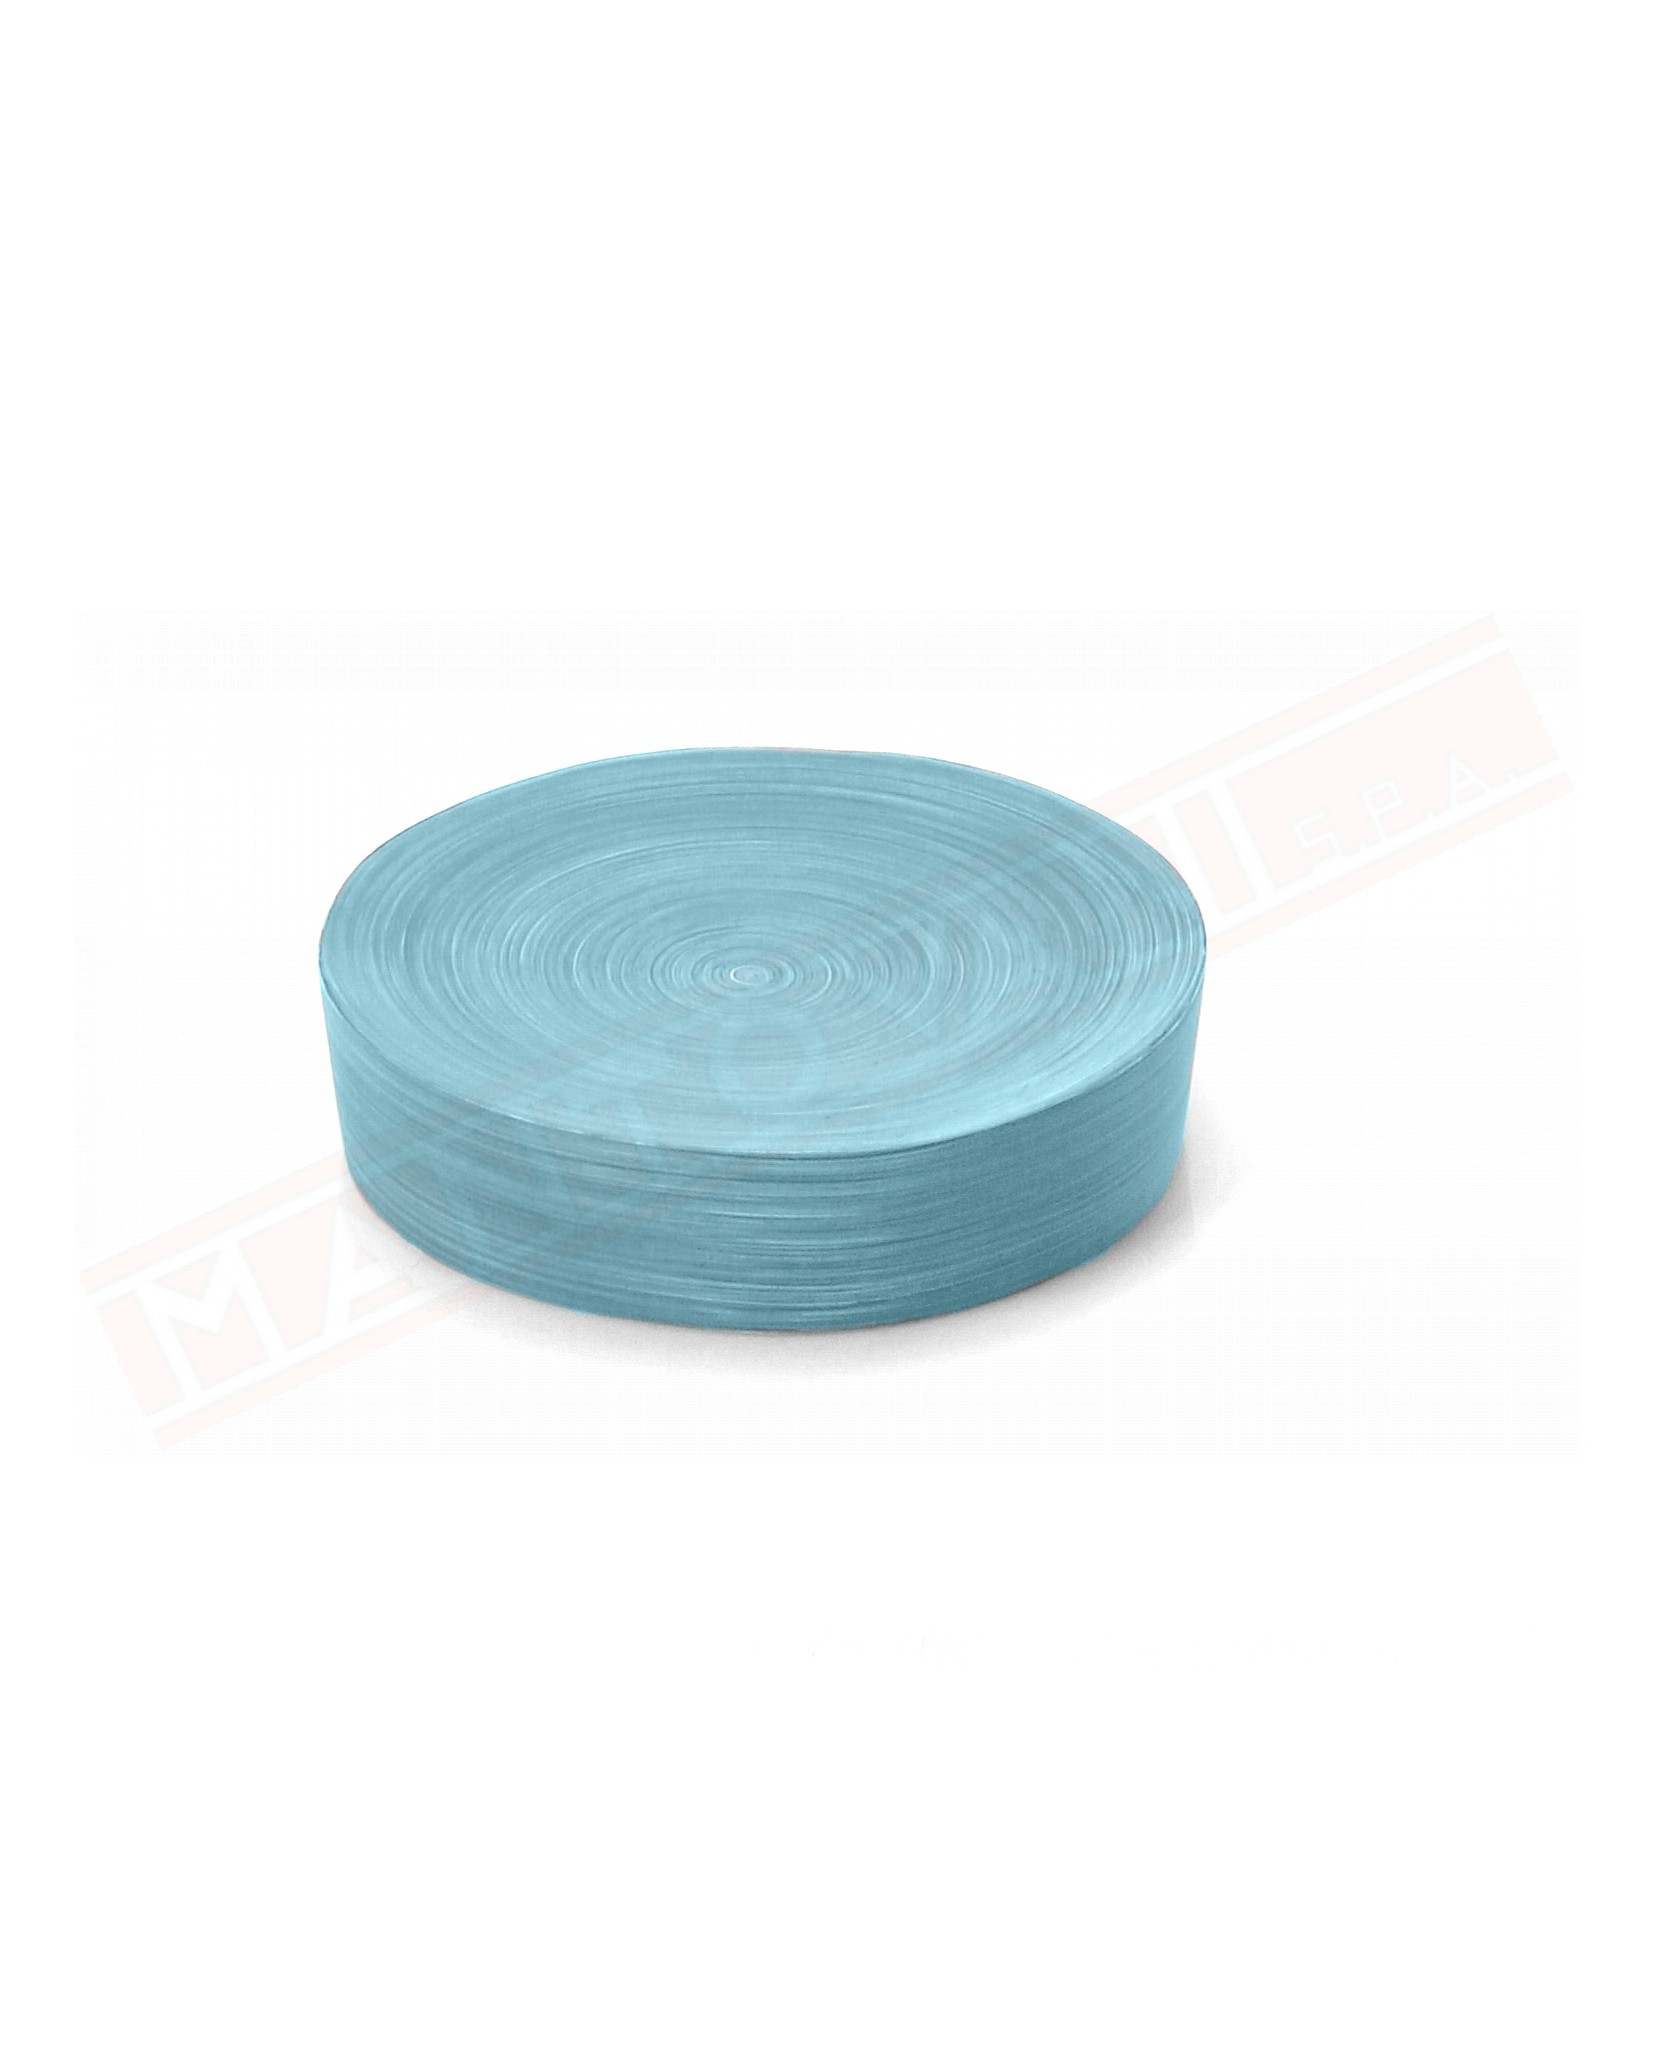 Gedy G. Sole portasapone in resina color azzurro misure diametro art 11,2x9